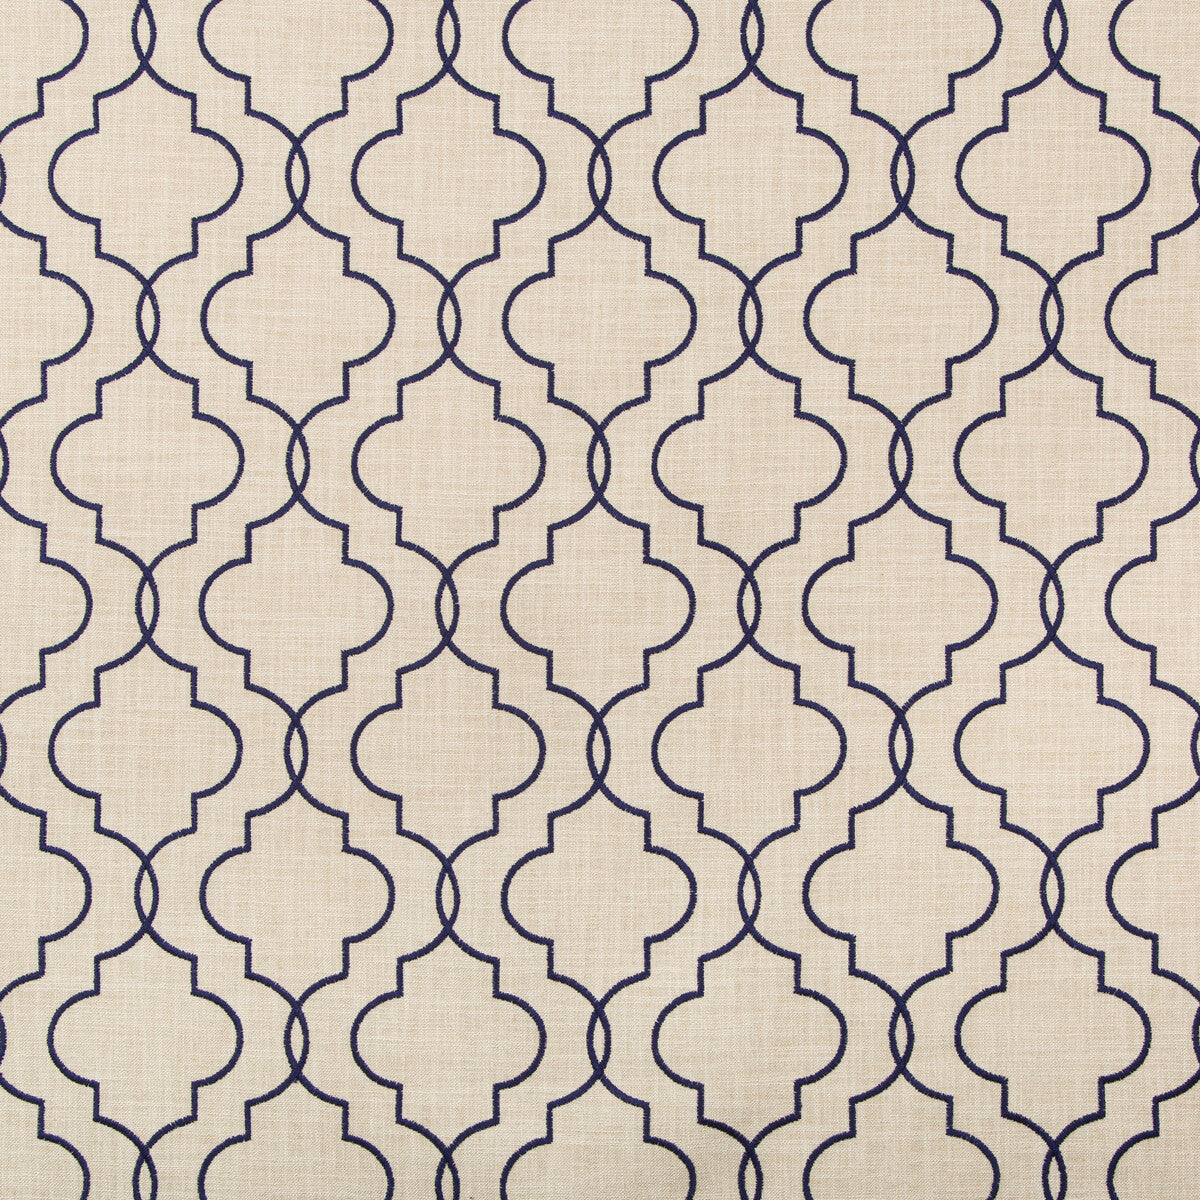 Kravet Basics fabric in 35794-516 color - pattern 35794.516.0 - by Kravet Basics